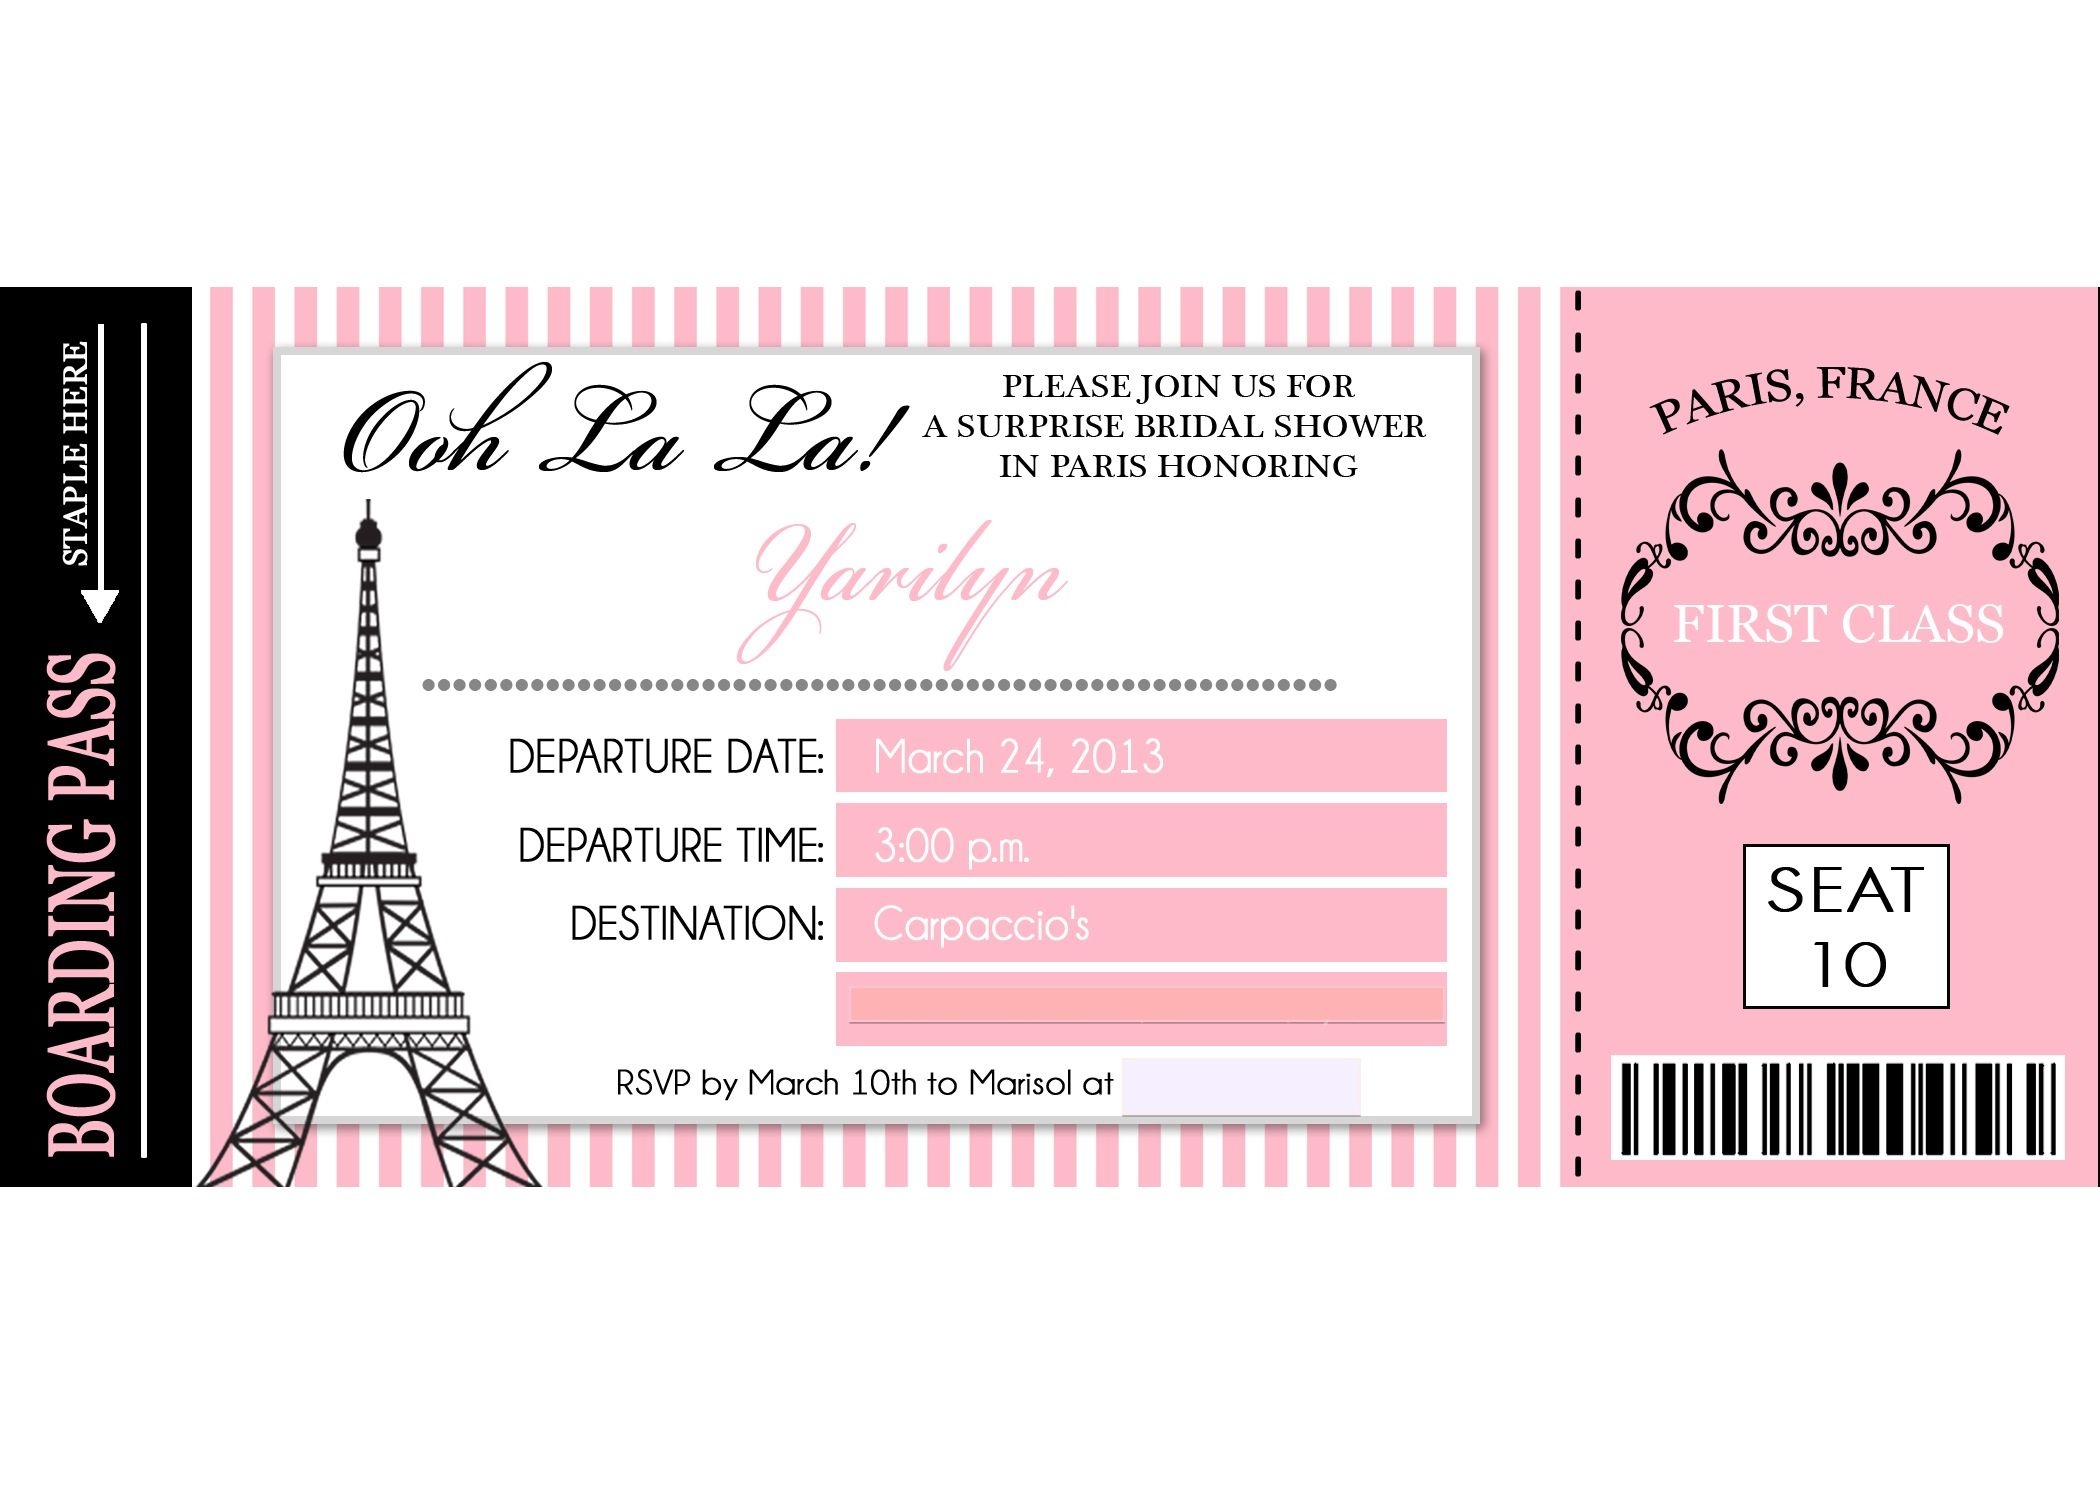 Билеты для игры распечатать. Приглашение на день рождения в стиле Париж. Билет в Париж шаблон. Приглашение на французскую вечеринку. Билет для распечатки.